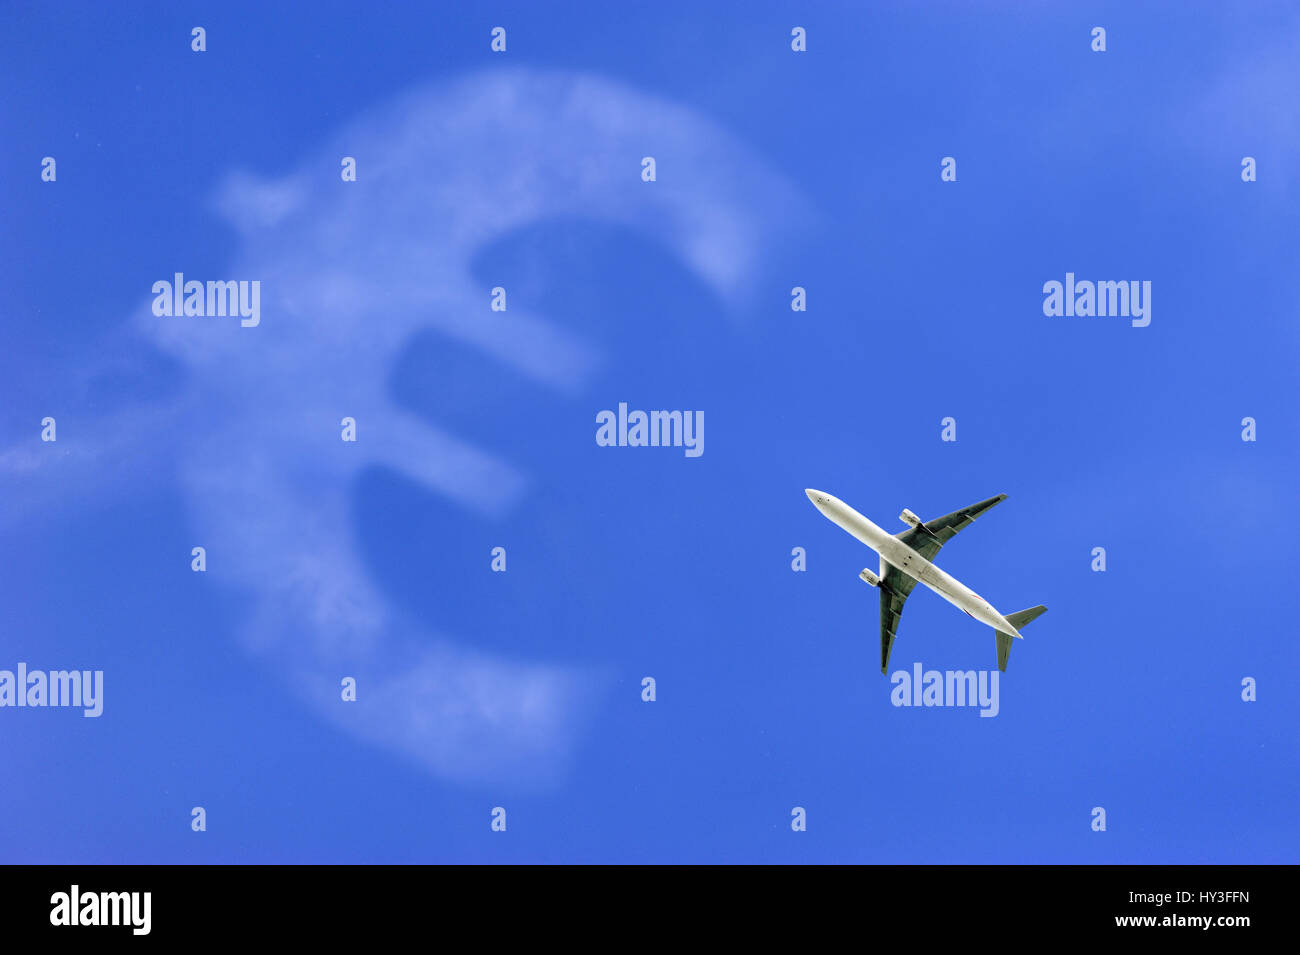 Airplane in the sky and eurosign, symbolic photo aerial transfer tax, Flugzeug am Himmel und Eurozeichen, Symbolfoto Luftverkehrssteuer Stock Photo